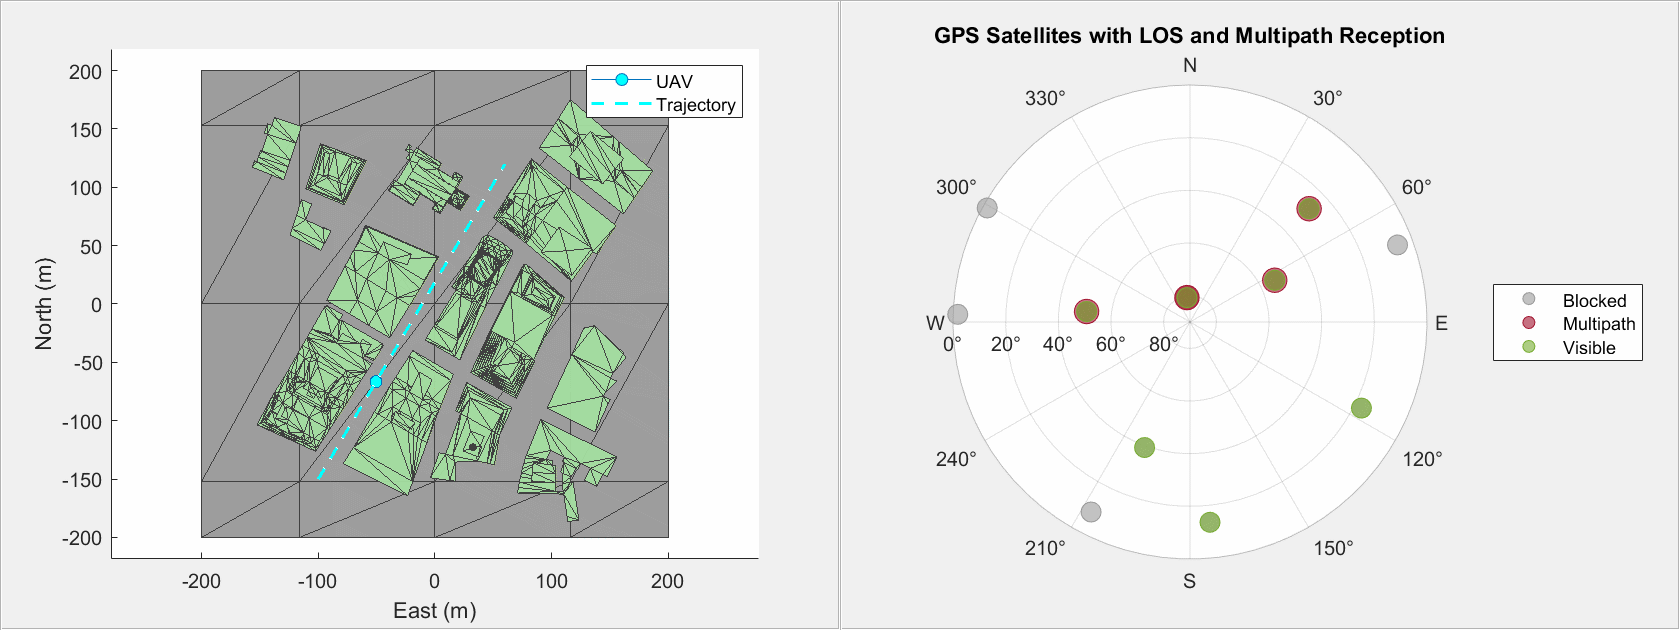 Simule los efectos de trayectorias múltiples de GNSS en vuelos de VANT no tripulados en entornos urbanos